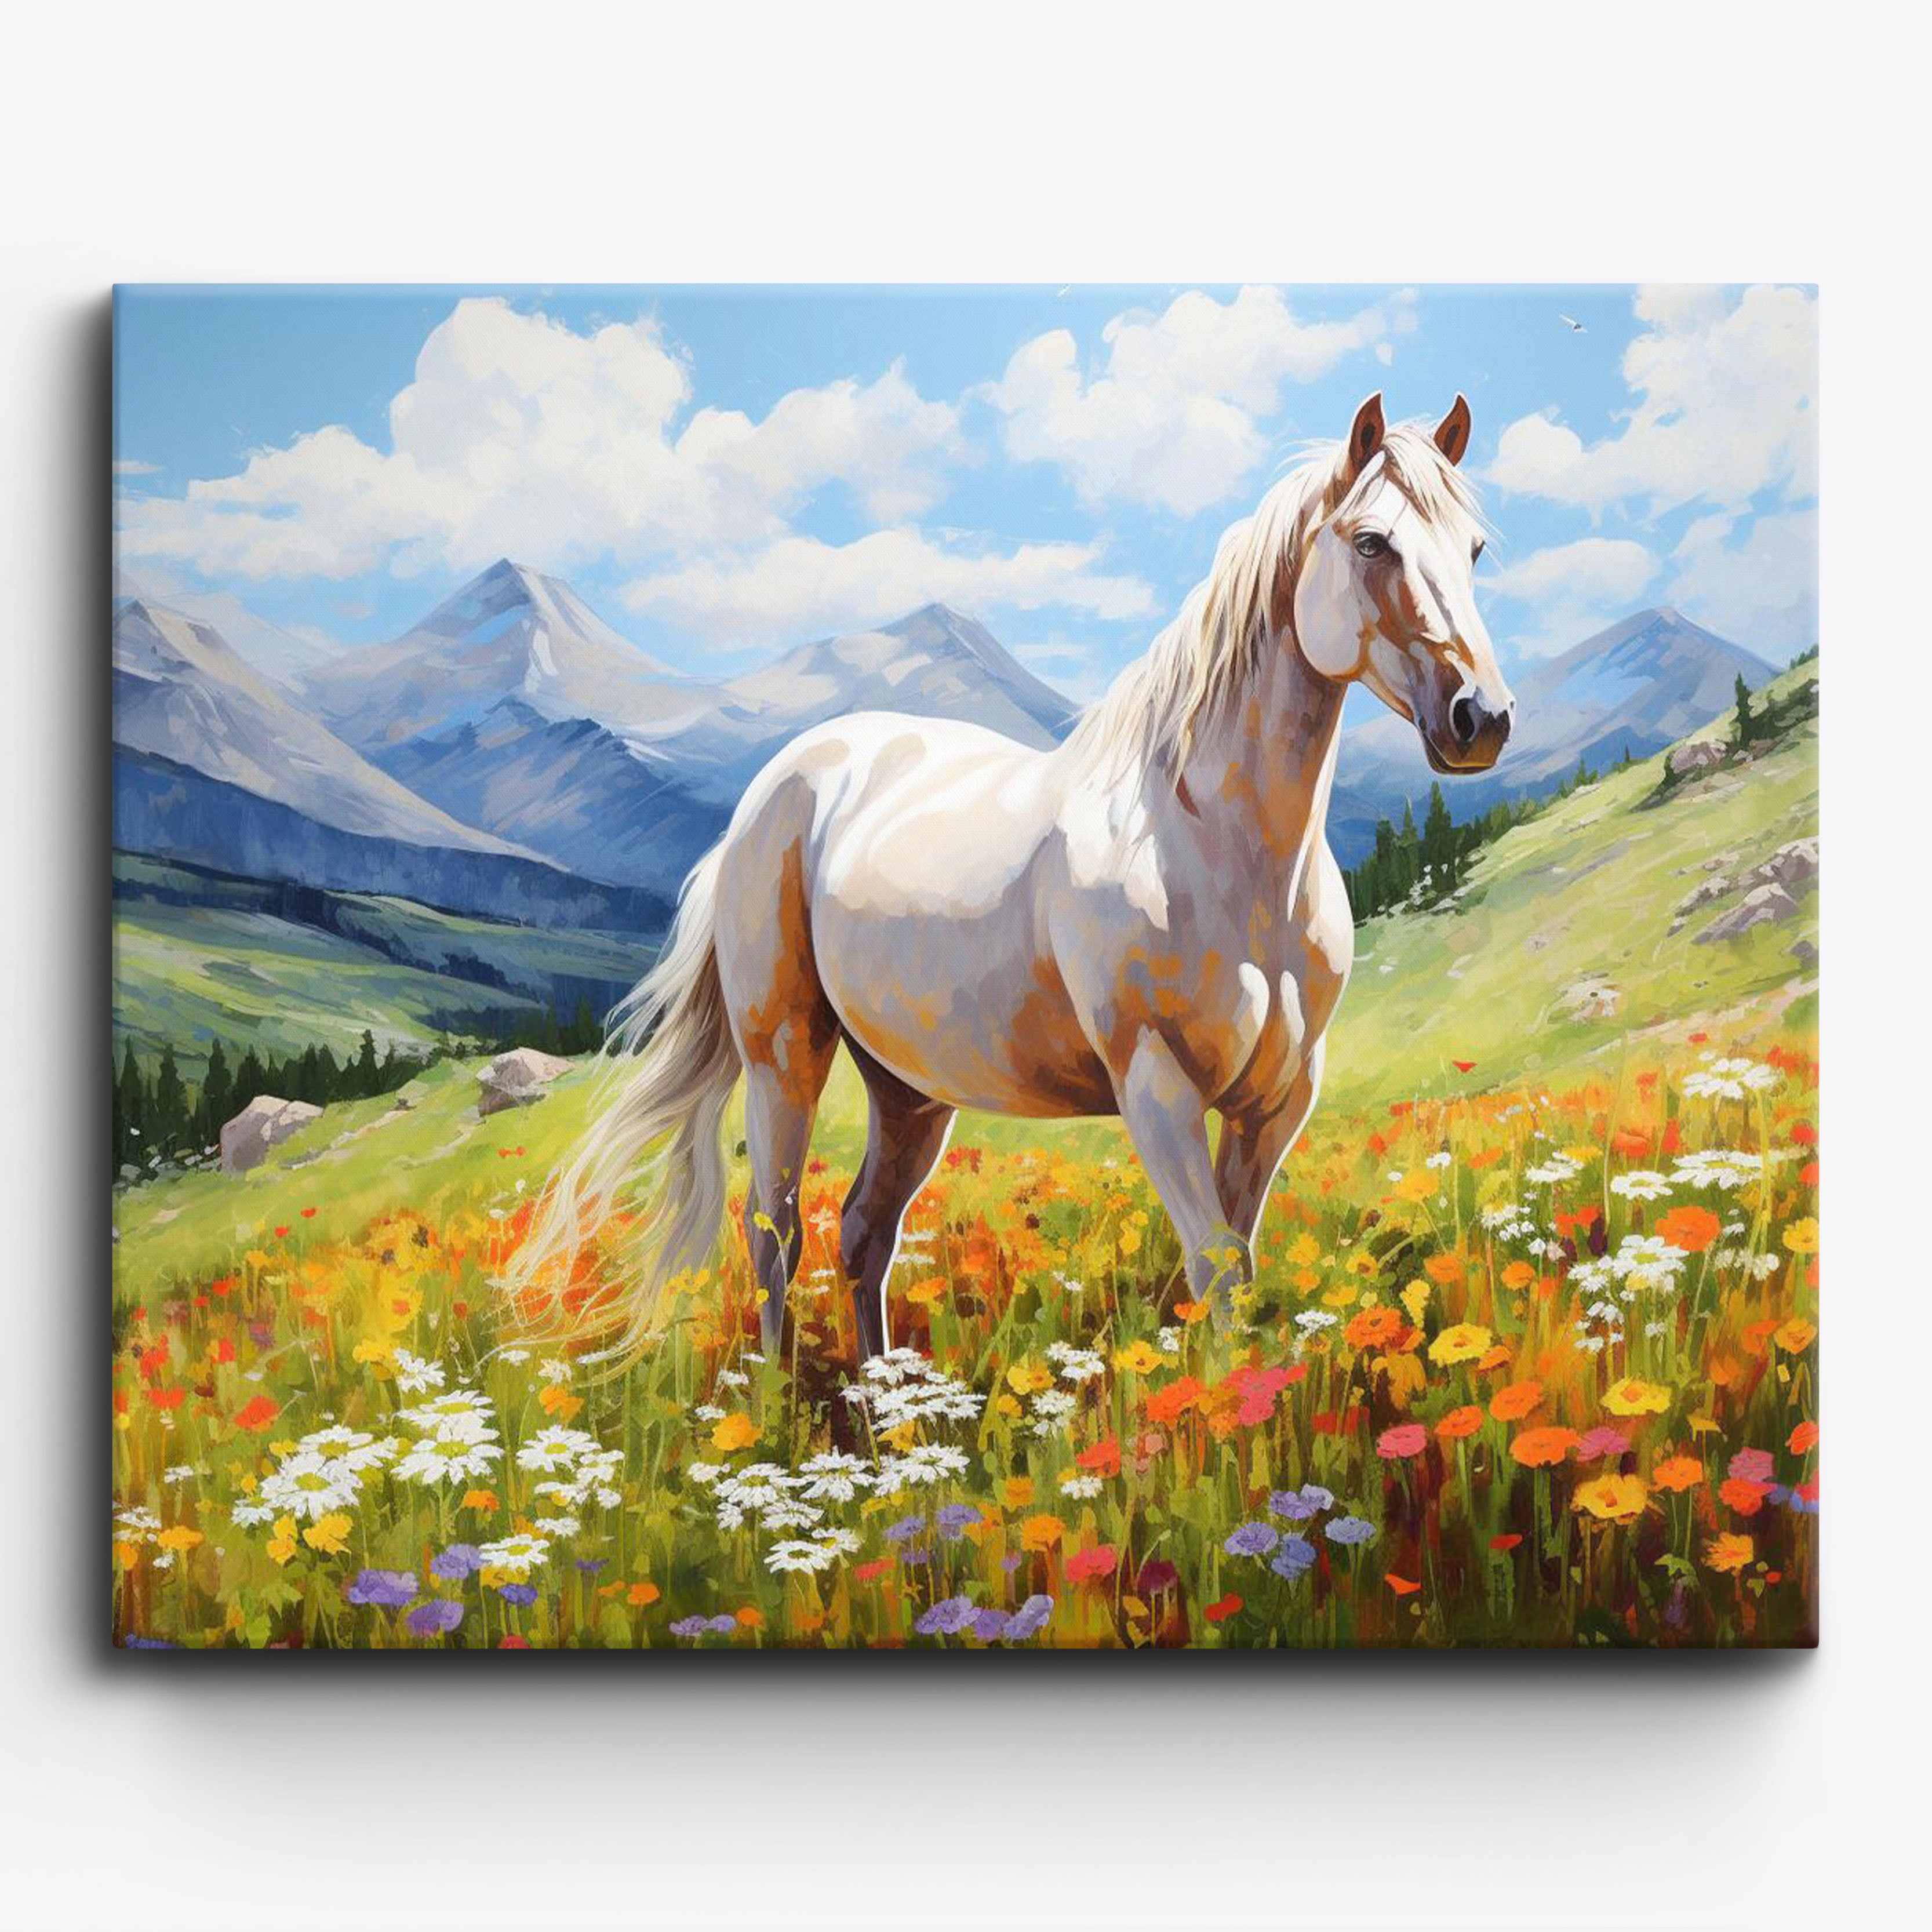 Meadow's Witte Paard Grace